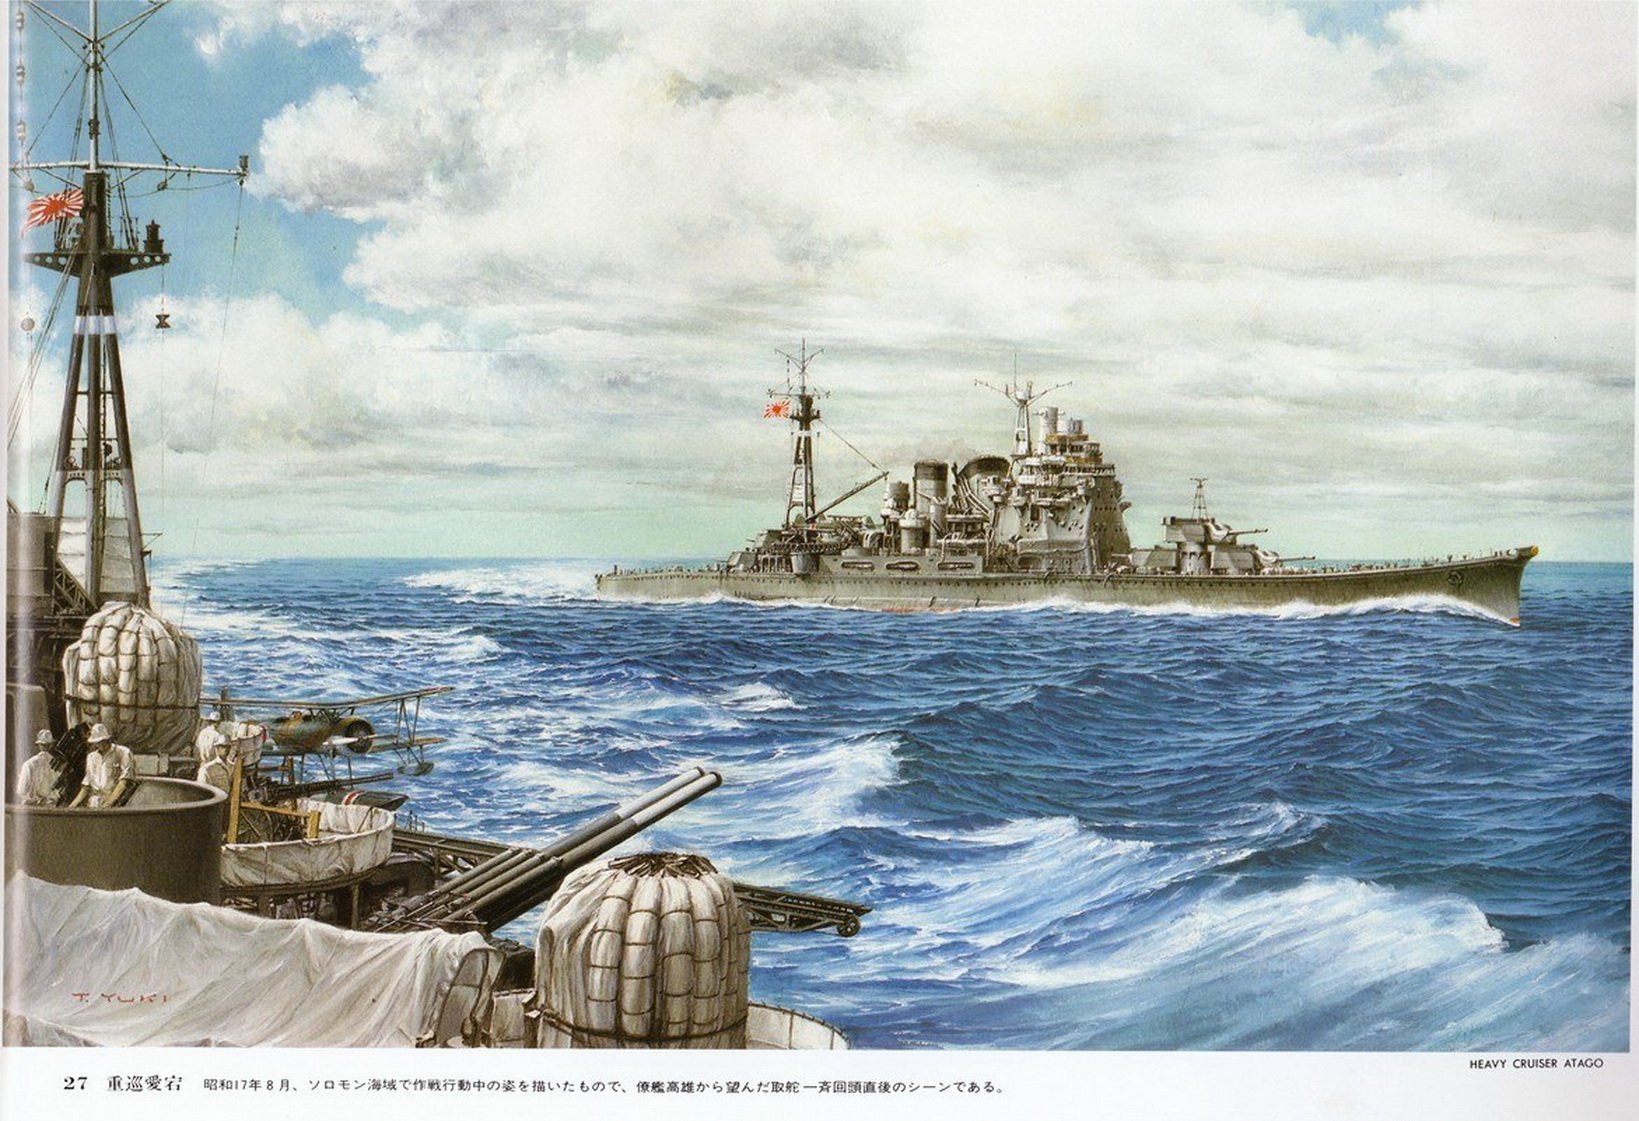 Военные флоты второй мировой войны. Императорский флот Японии арт. Крейсер Атаго. Японские военные корабли второй мировой войны. Японский Императорский флот.